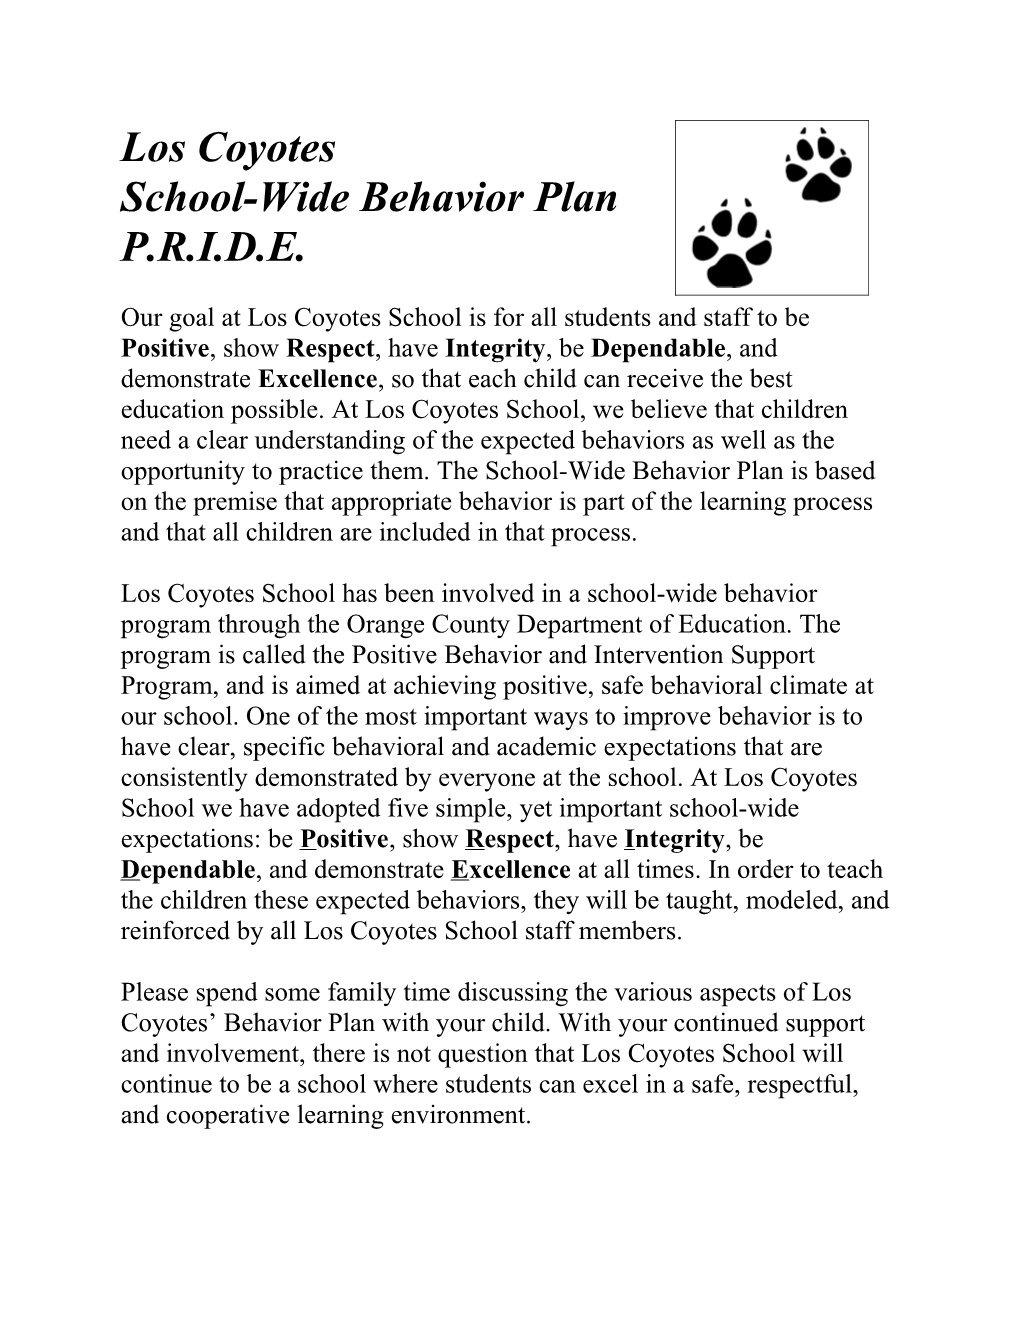 School Wide Behavior Plan